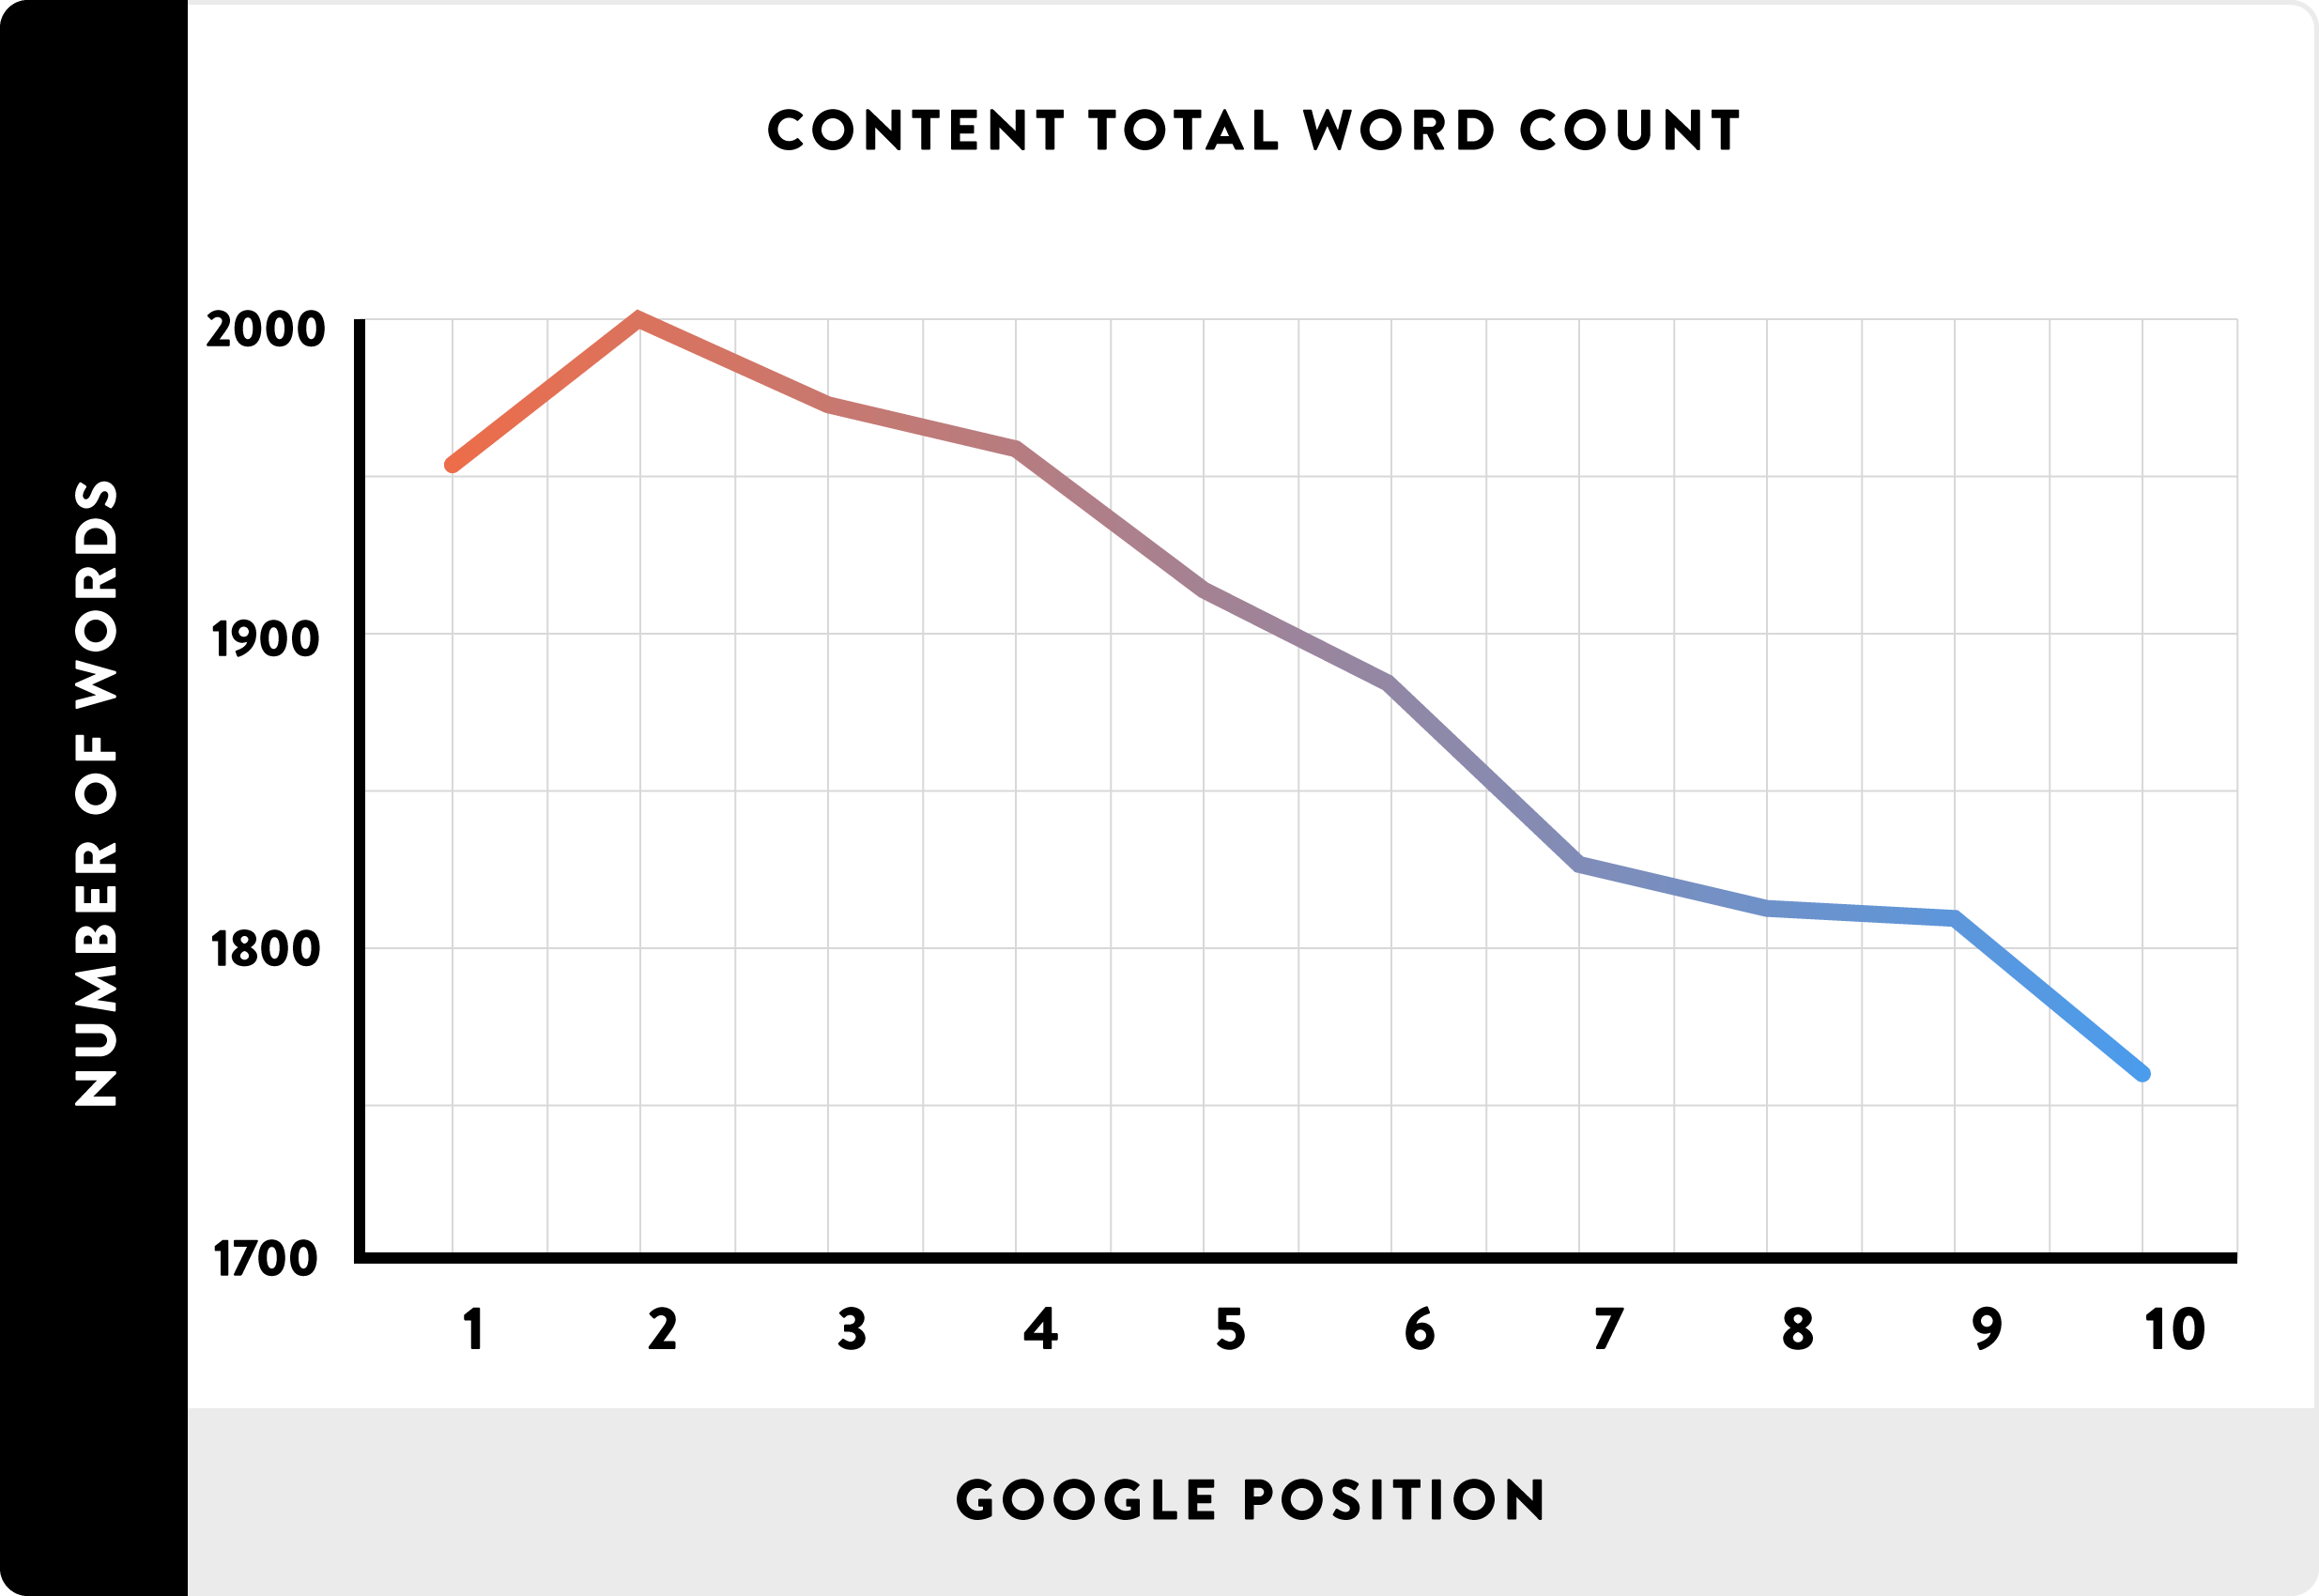 Longer content ranks above shorter content